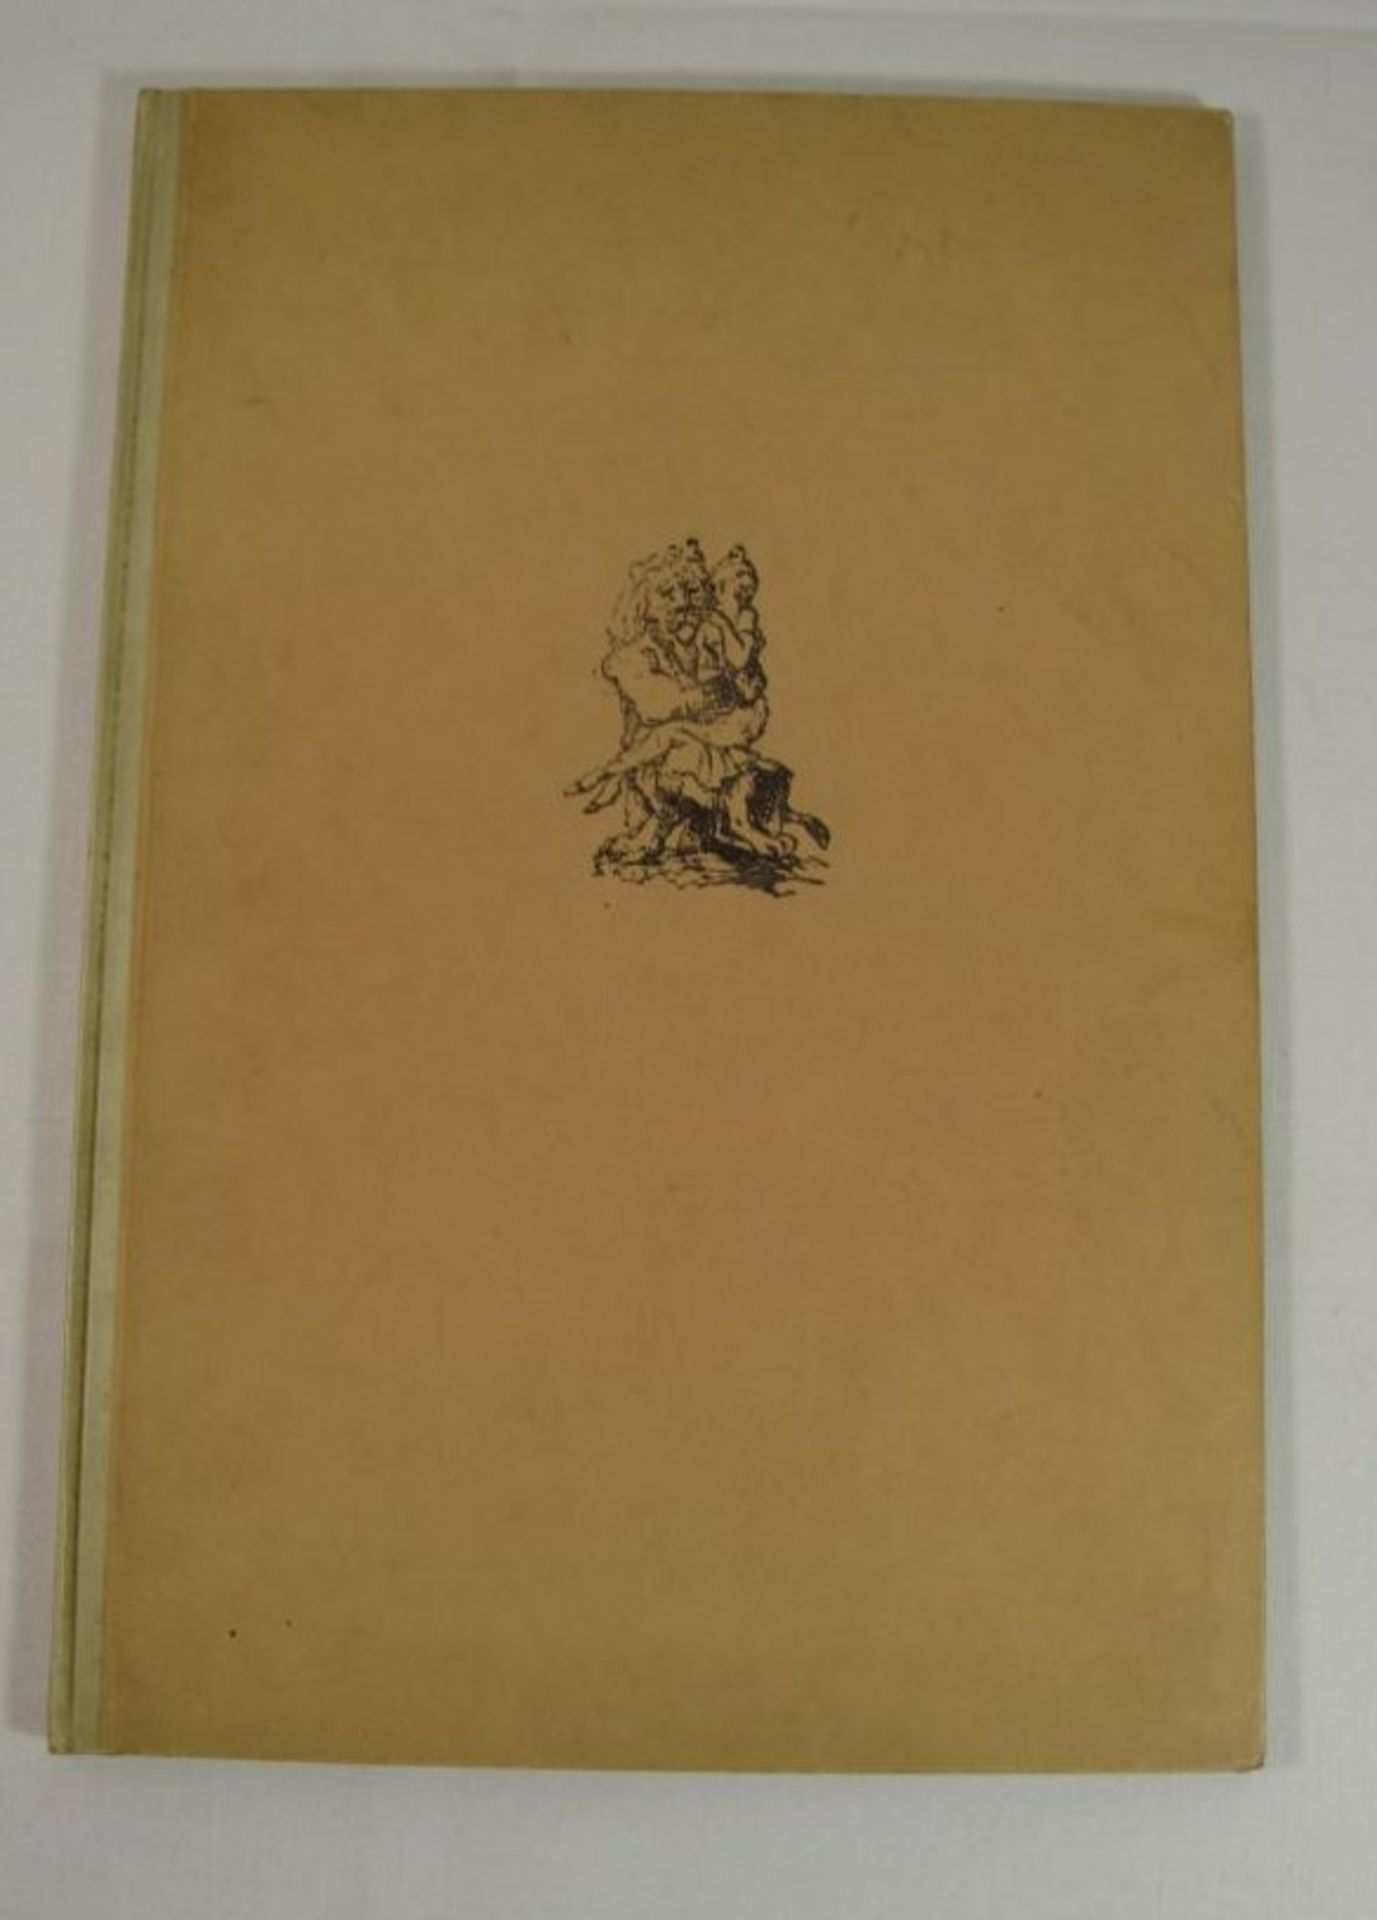 Das singende, springende Löweneckerchen, Max Slevogt, limit. Auflage, Nr. 169, auf letzter Seite